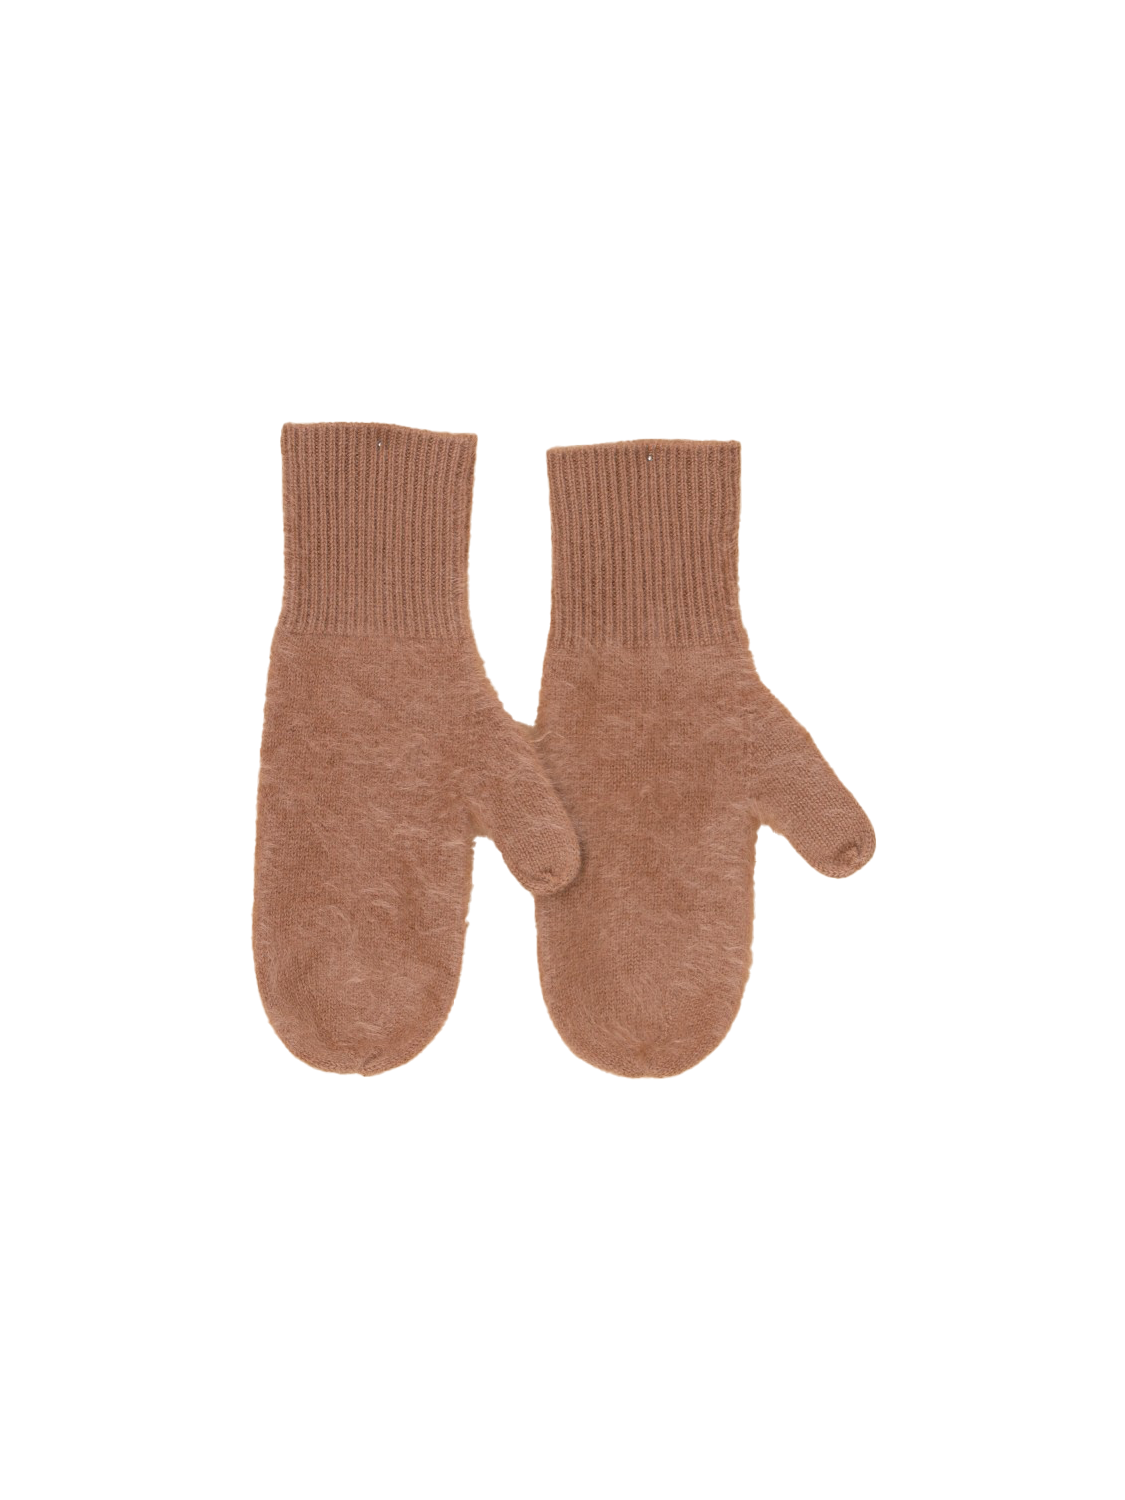 Bienne – brushed gloves made of cashmere 